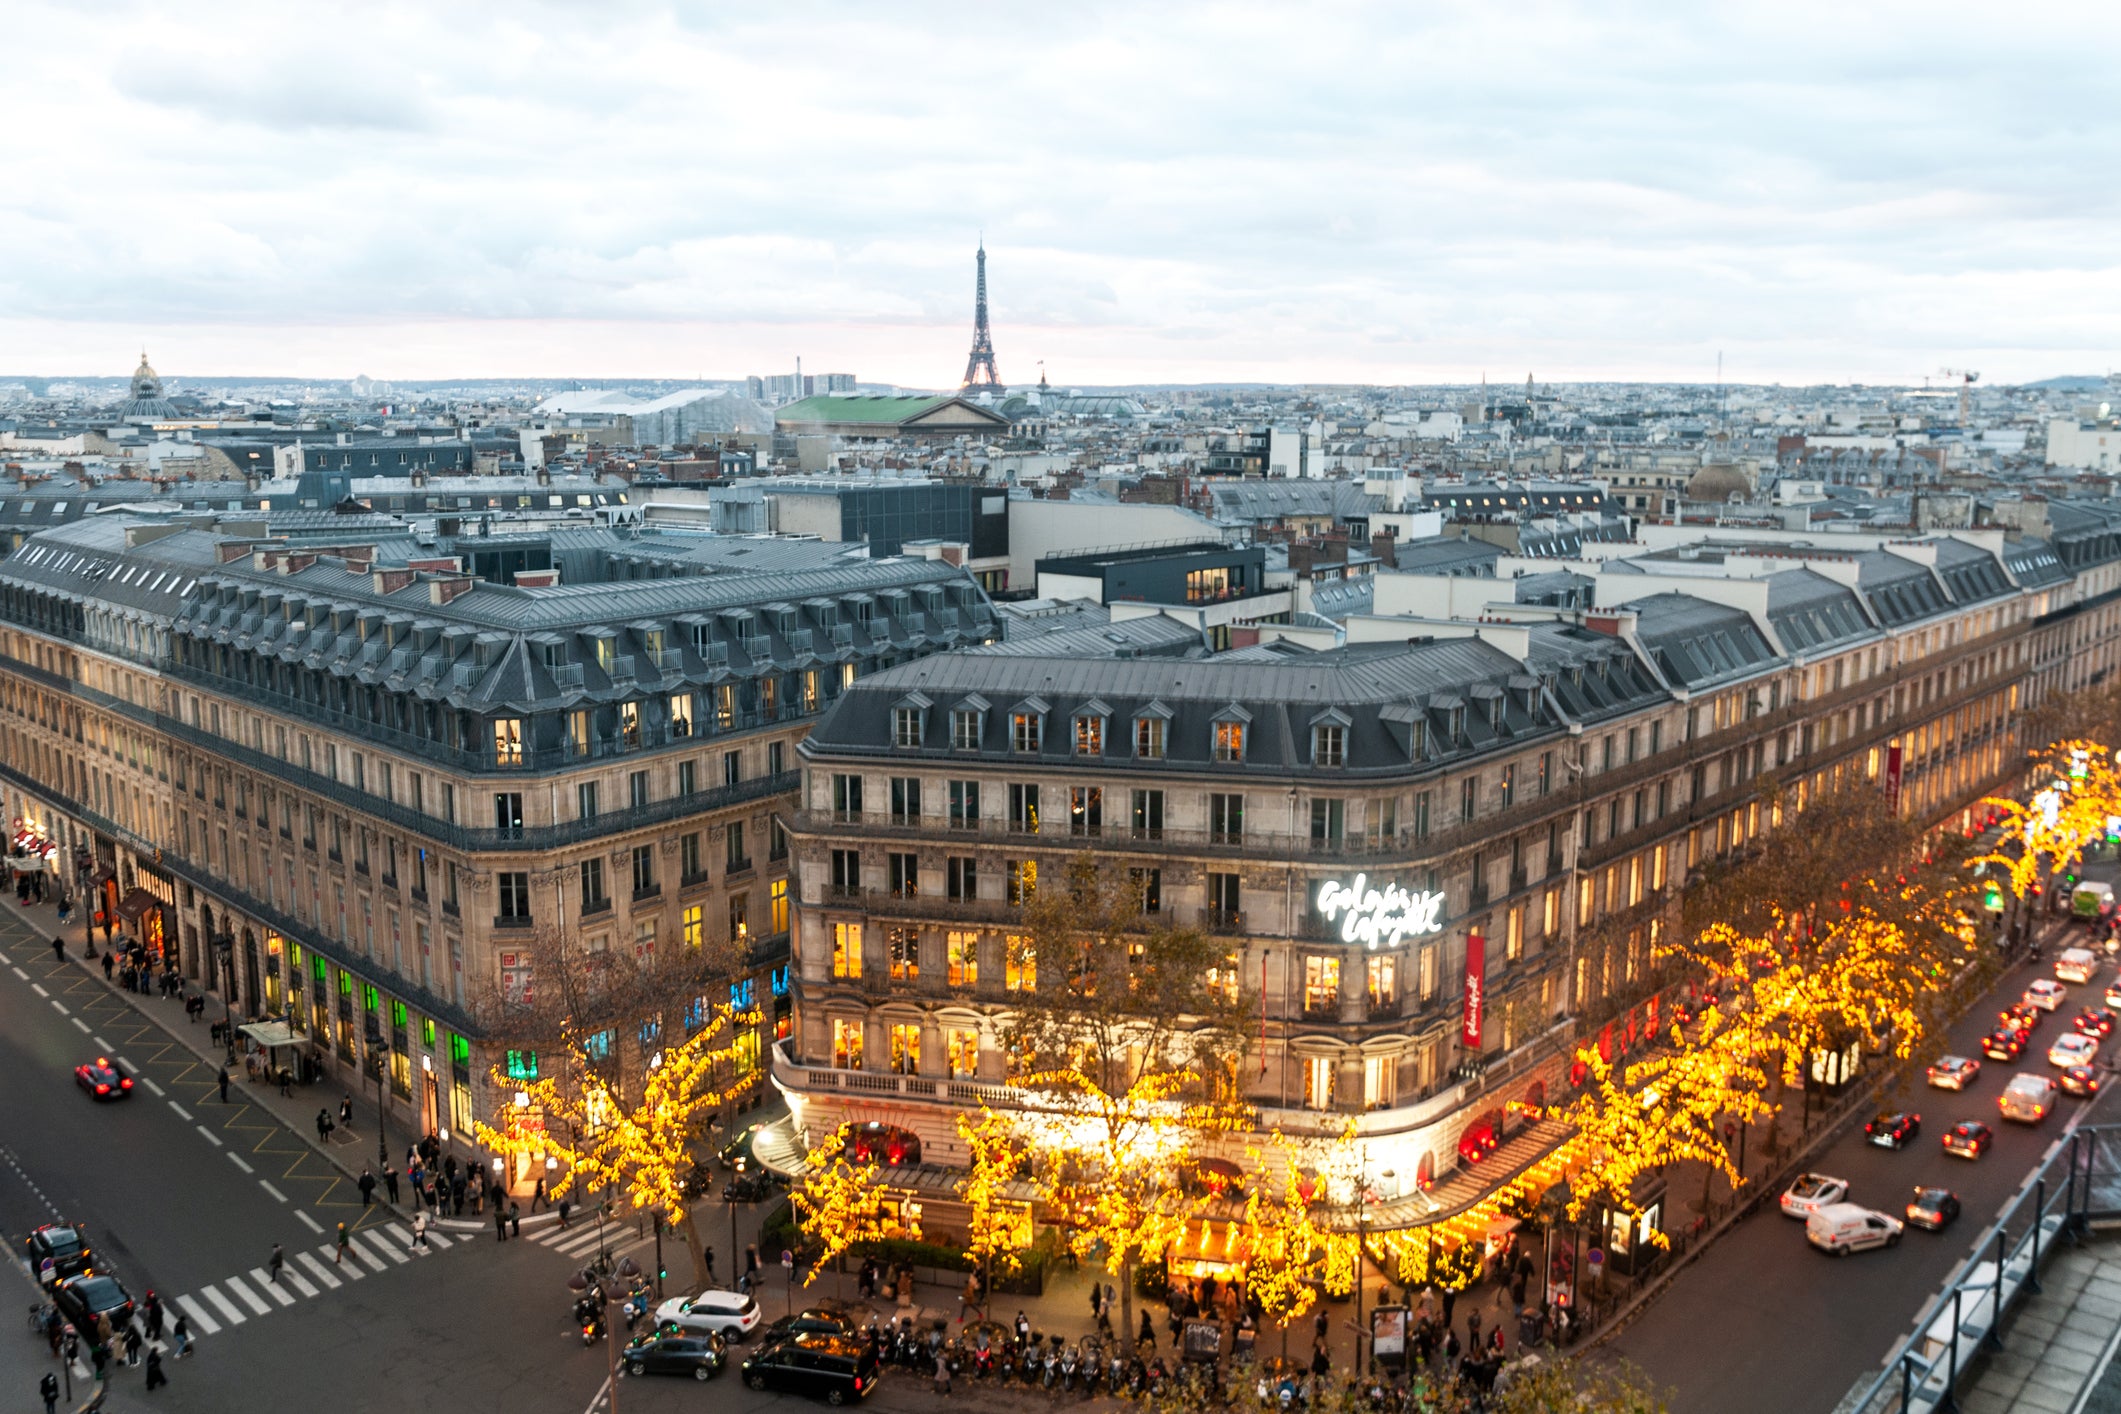 Galeries Lafayette is Paris’ most famous department store